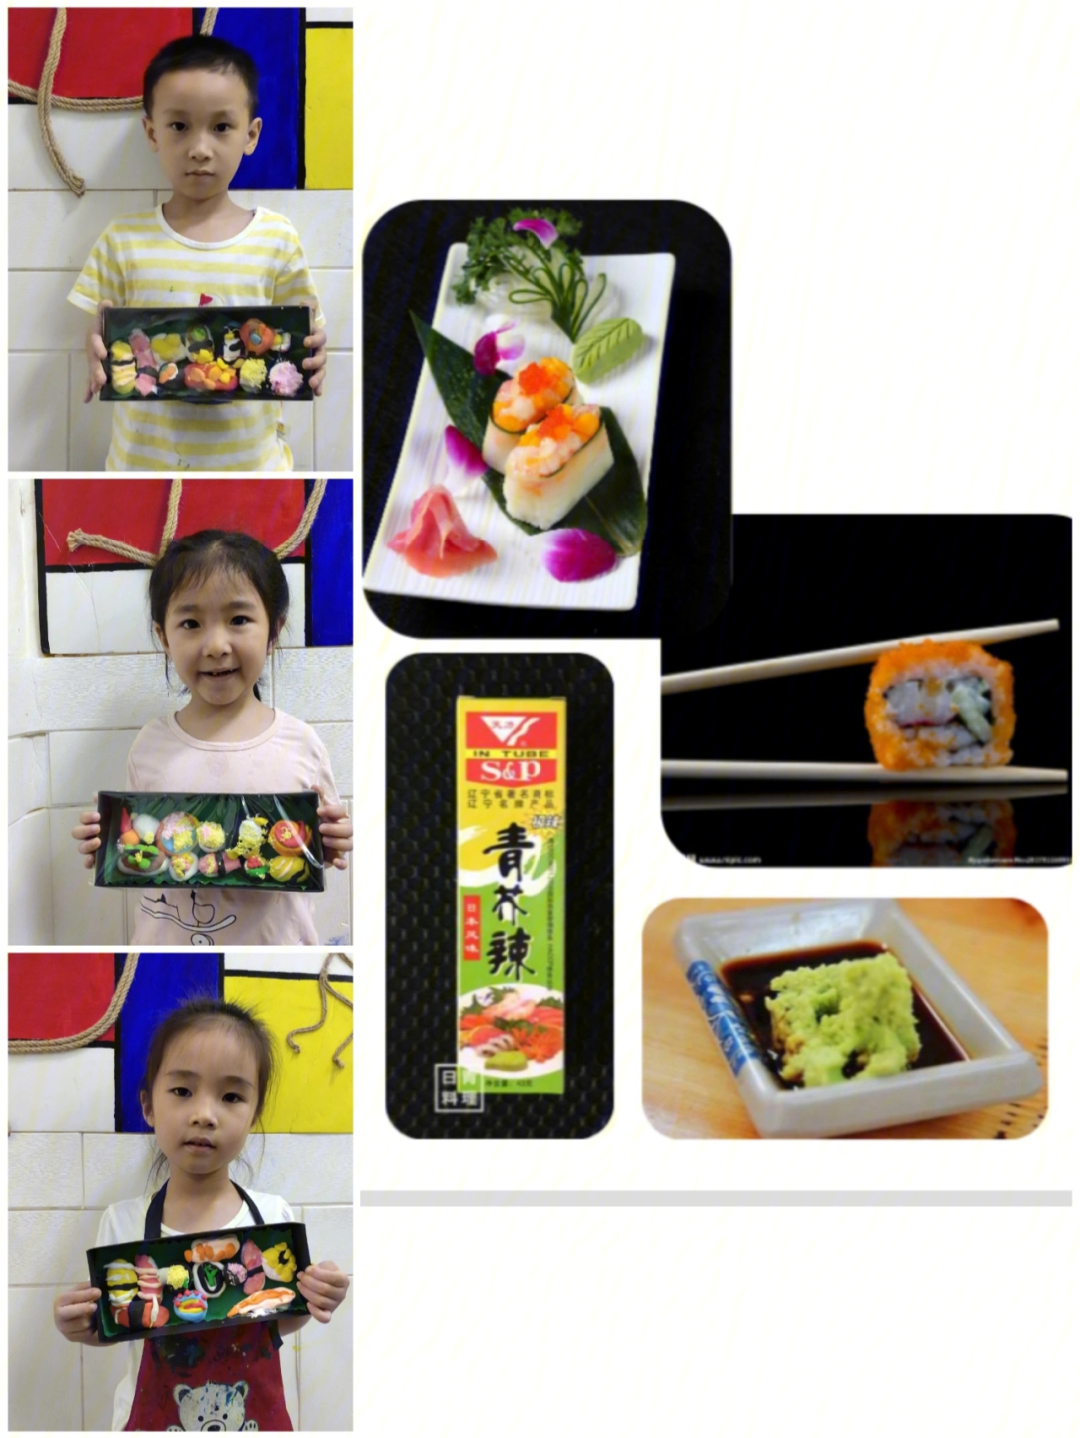 寿司制作流程图片